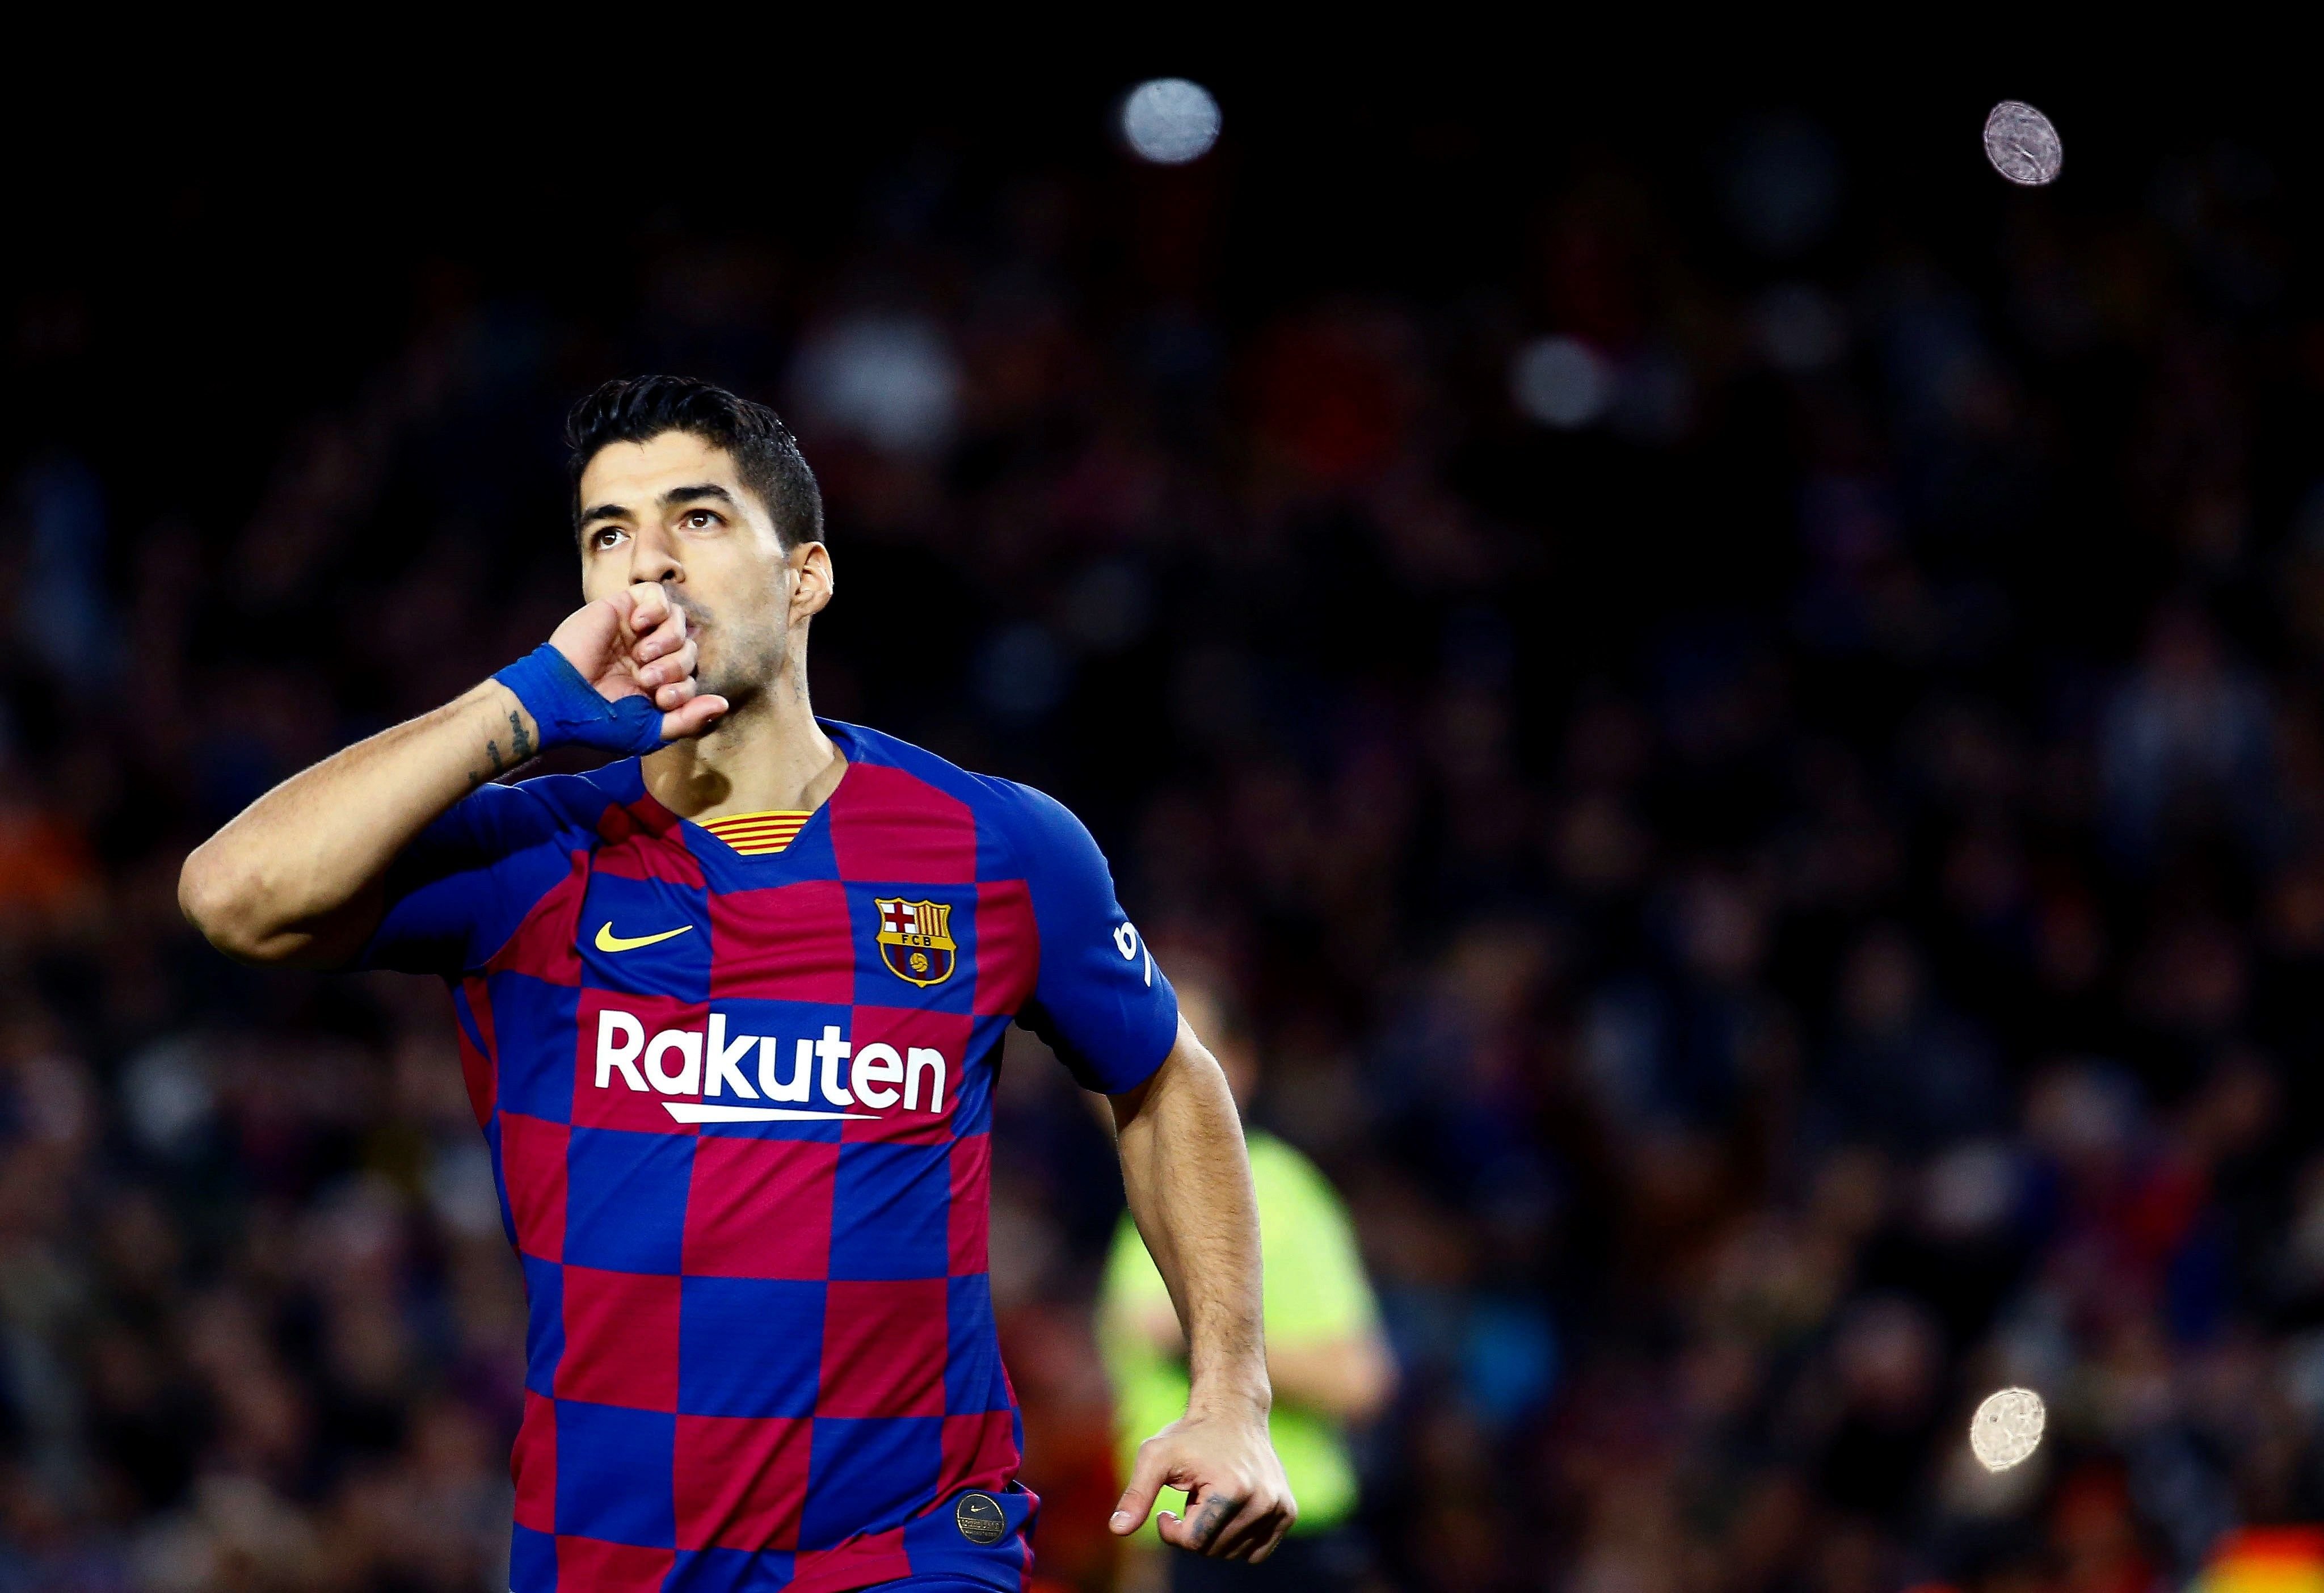 La lesió de Suárez obliga el Barça a fitxar un davanter